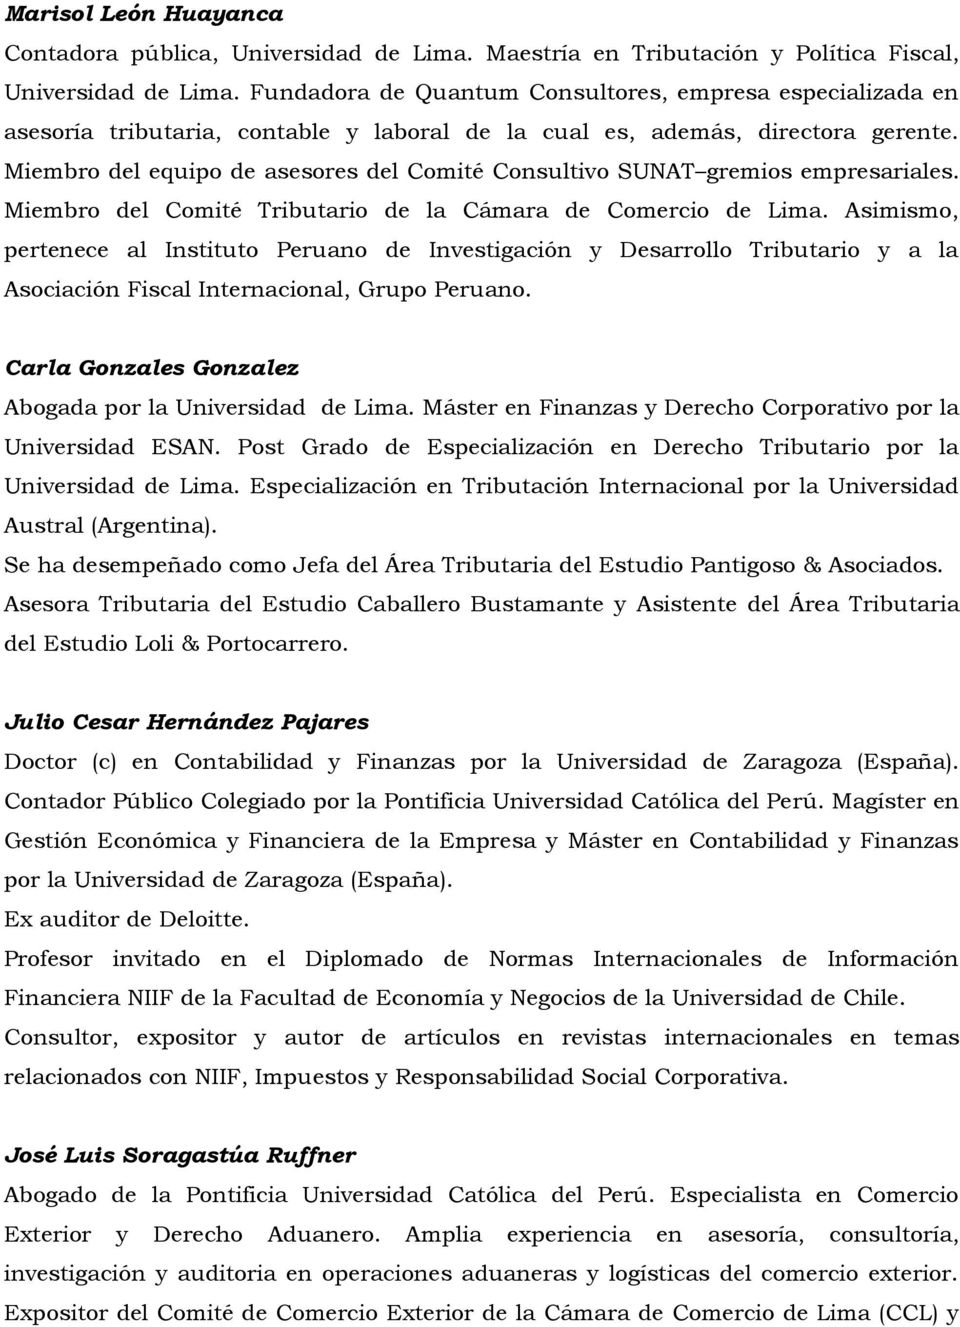 Miembro del equipo de asesores del Comité Consultivo SUNAT gremios empresariales. Miembro del Comité Tributario de la Cámara de Comercio de Lima.